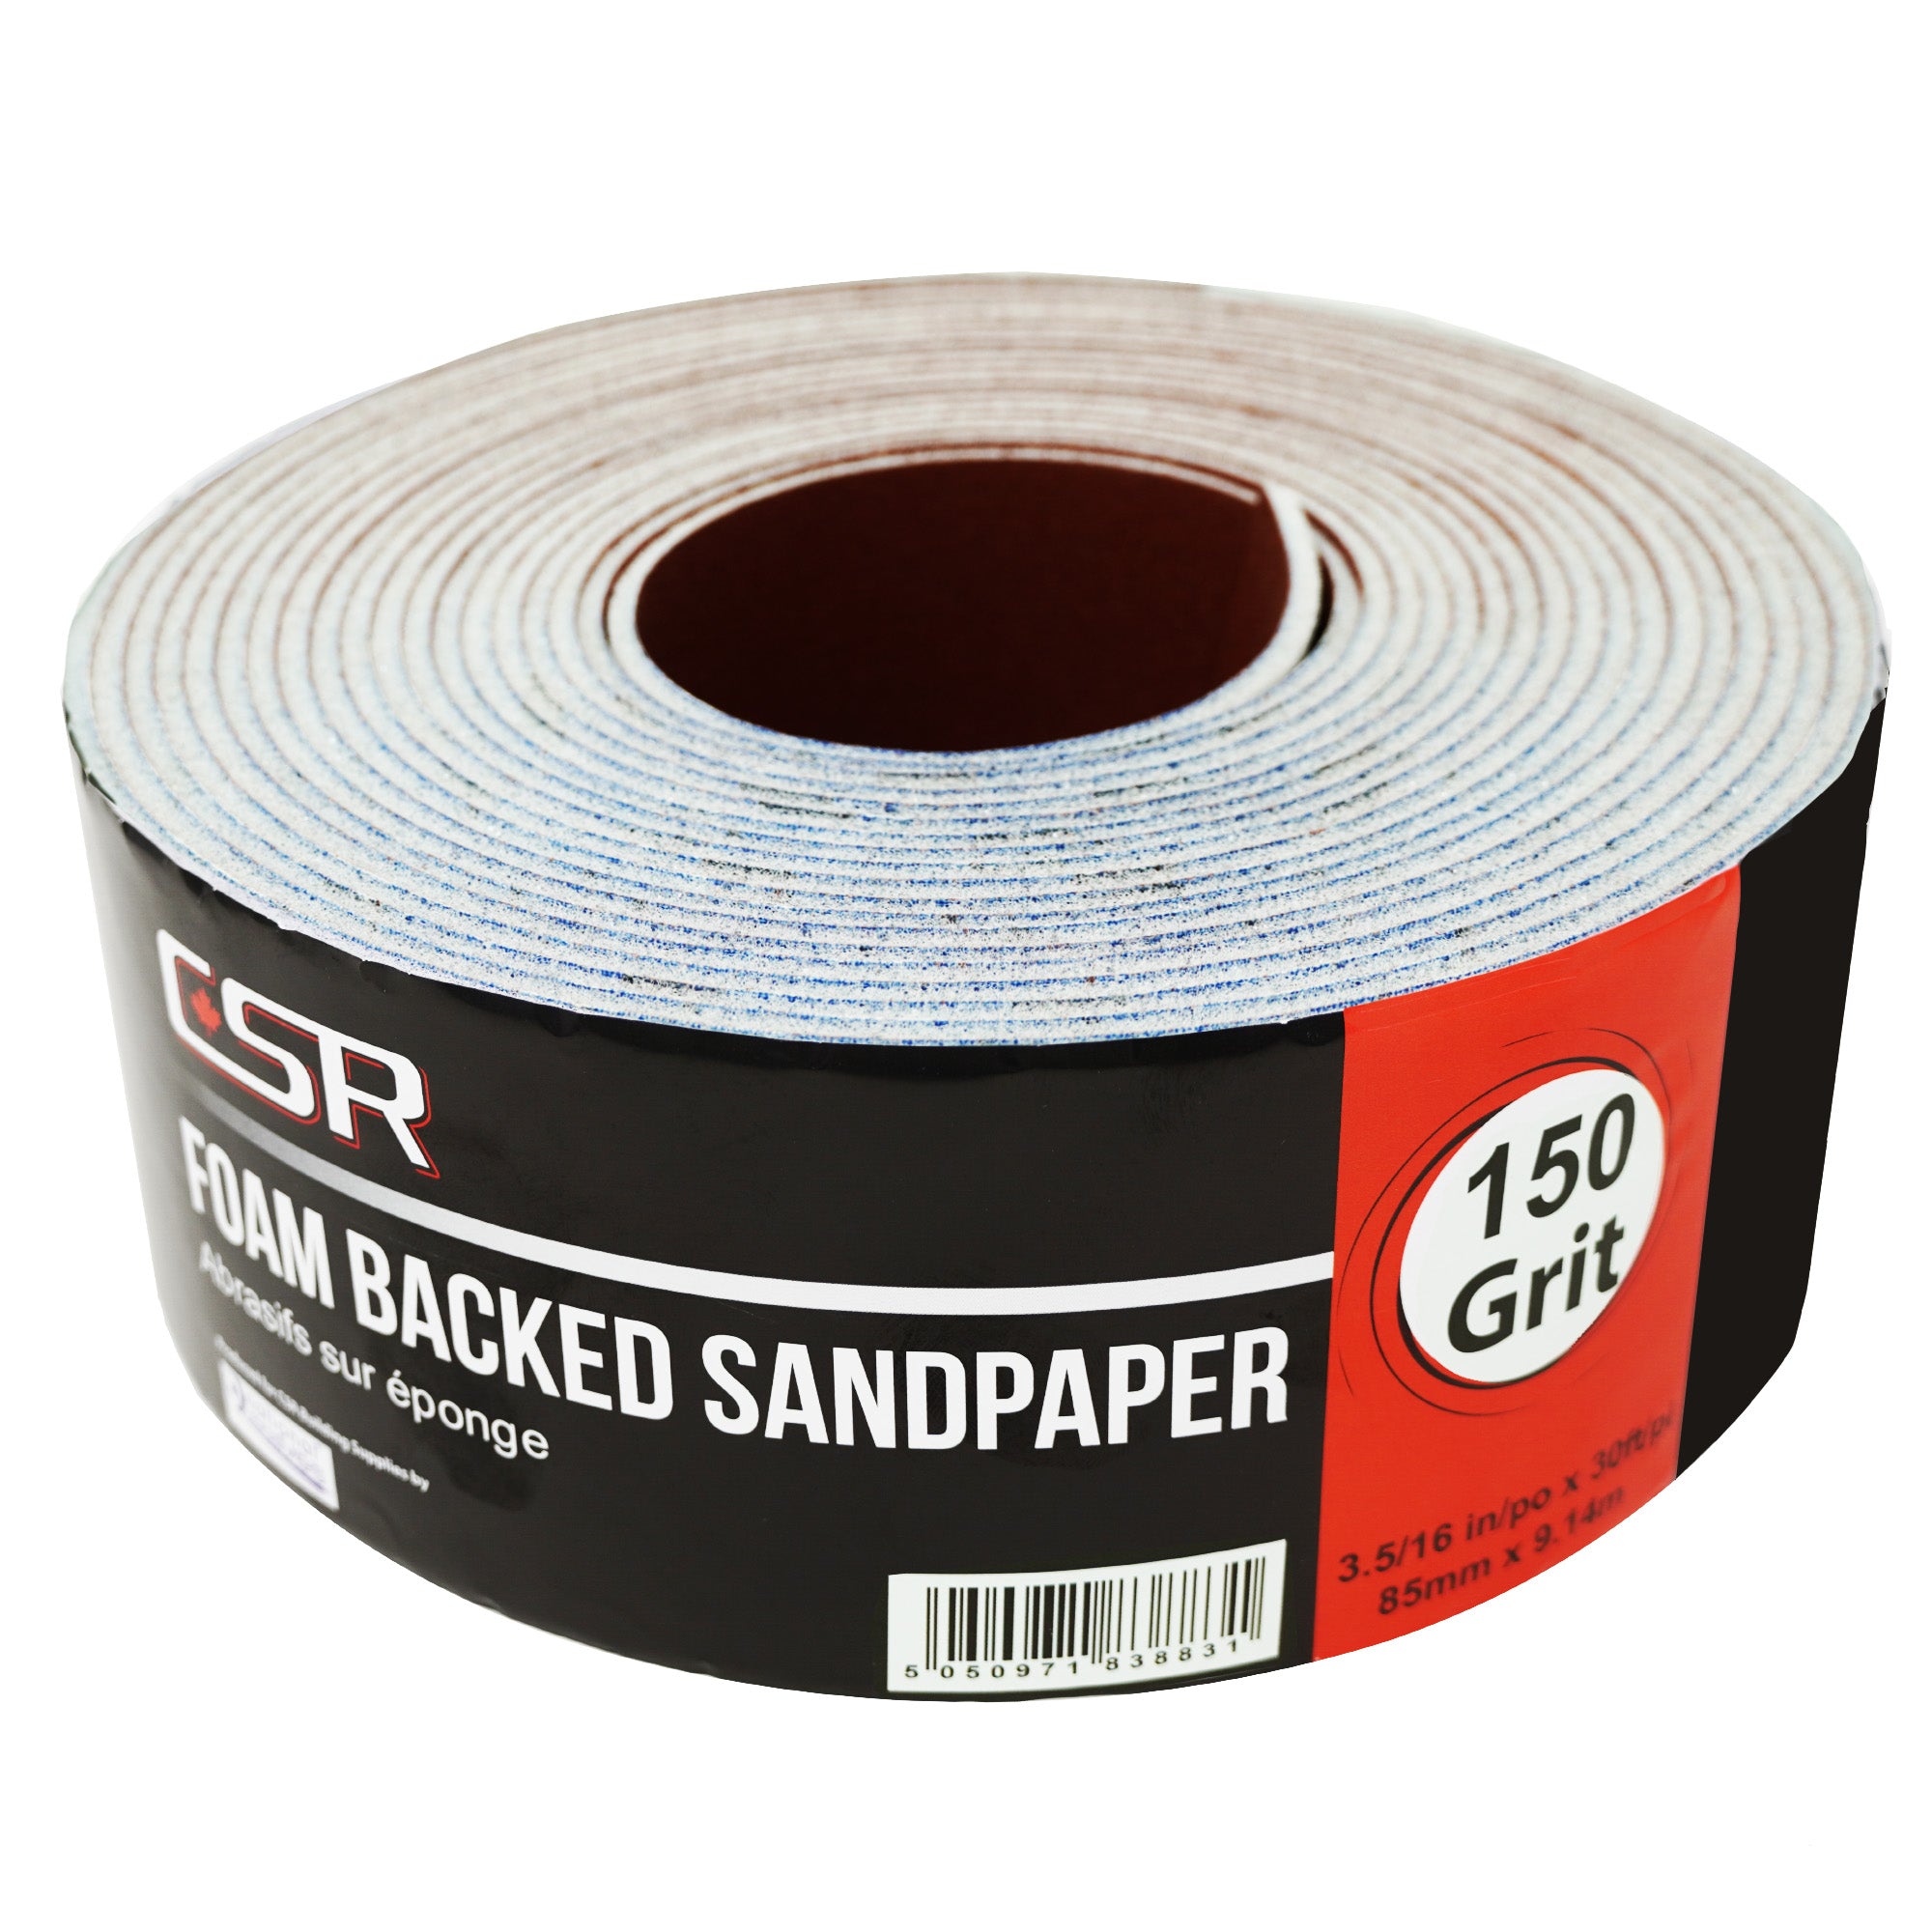 CSR 3-5/16" x 30' Papel de lija con respaldo de esponja